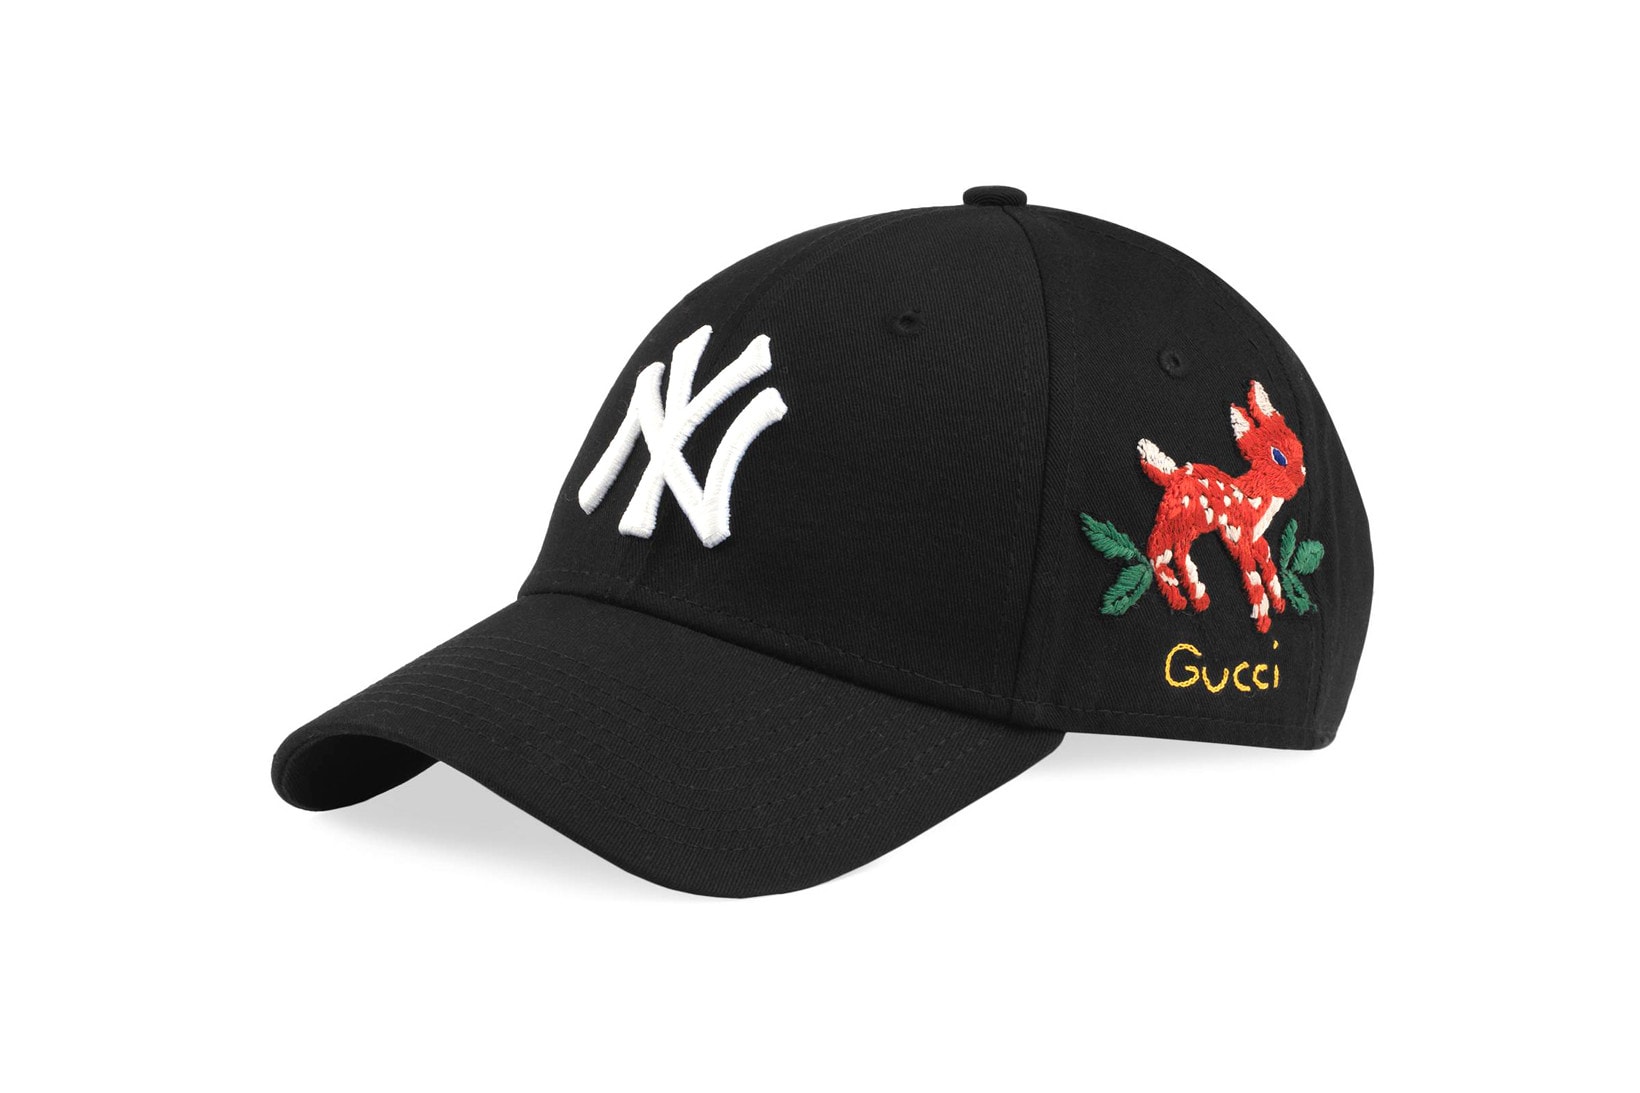 Gucci x New York Yankees 聯名別注系列上架